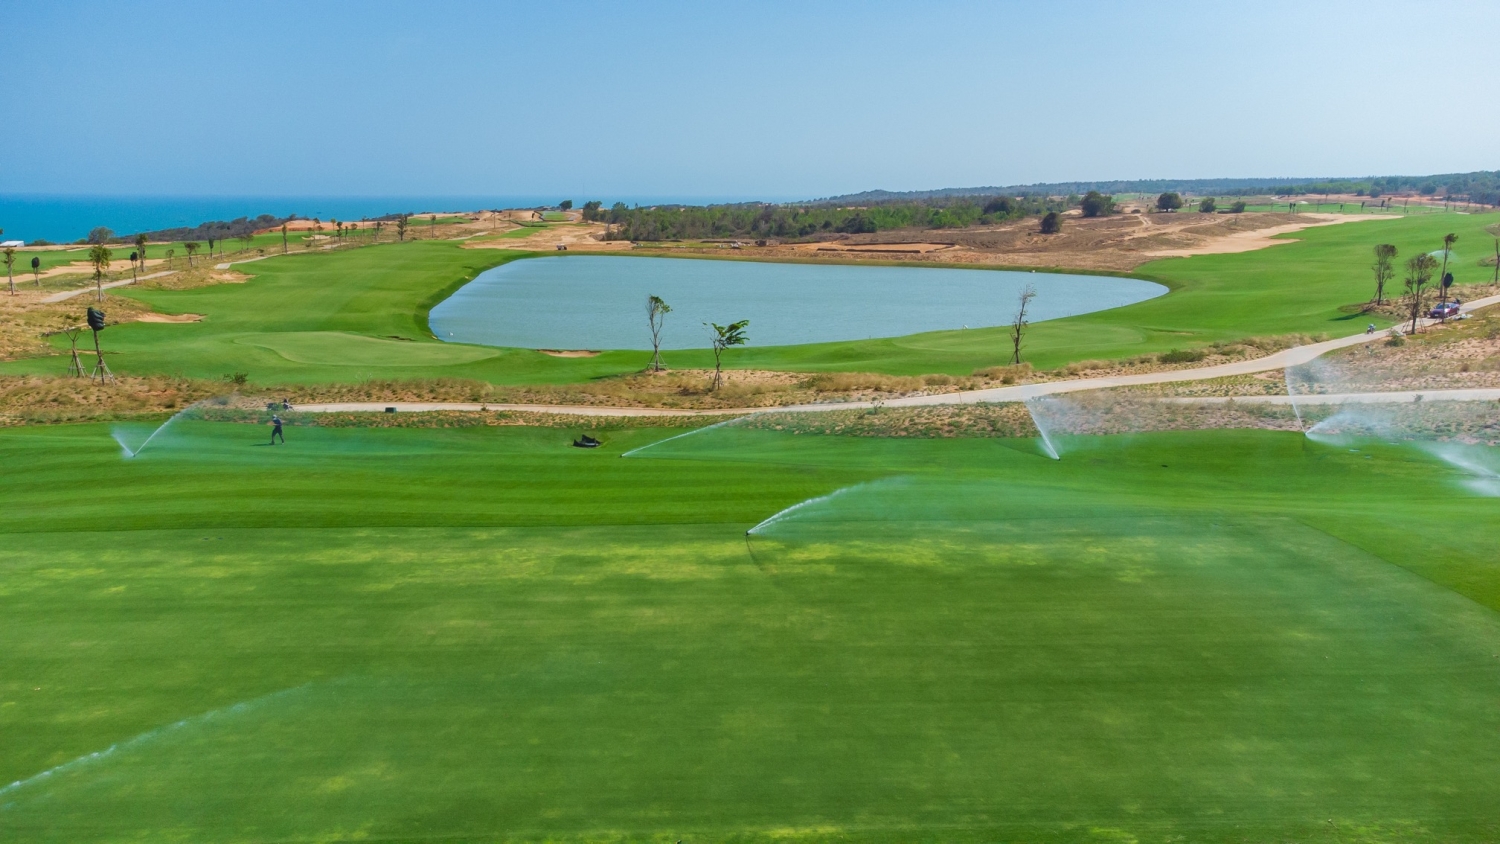 Cụm sân Golf PGA Ocean tại NovaWorld Phan Thiet sắp đưa vào vận hành vào giữa tháng 04/2021